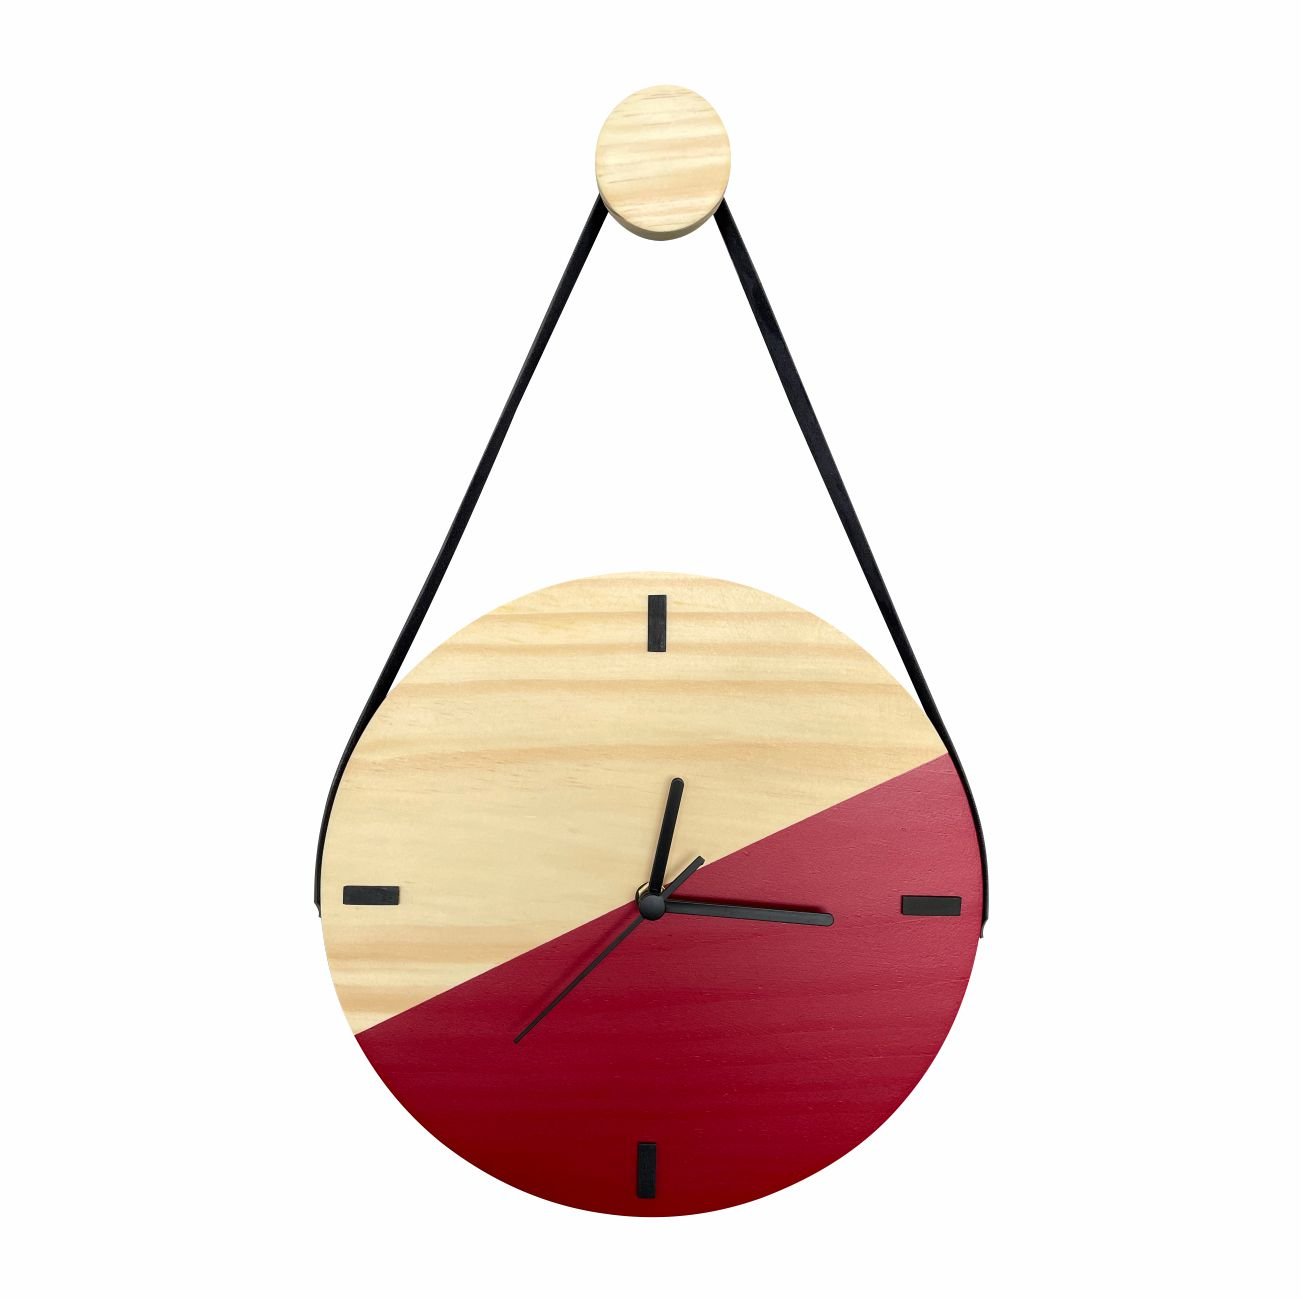 Relógio Decorativo Edward Clock Escandinavo Vermelho Ferrari - 1